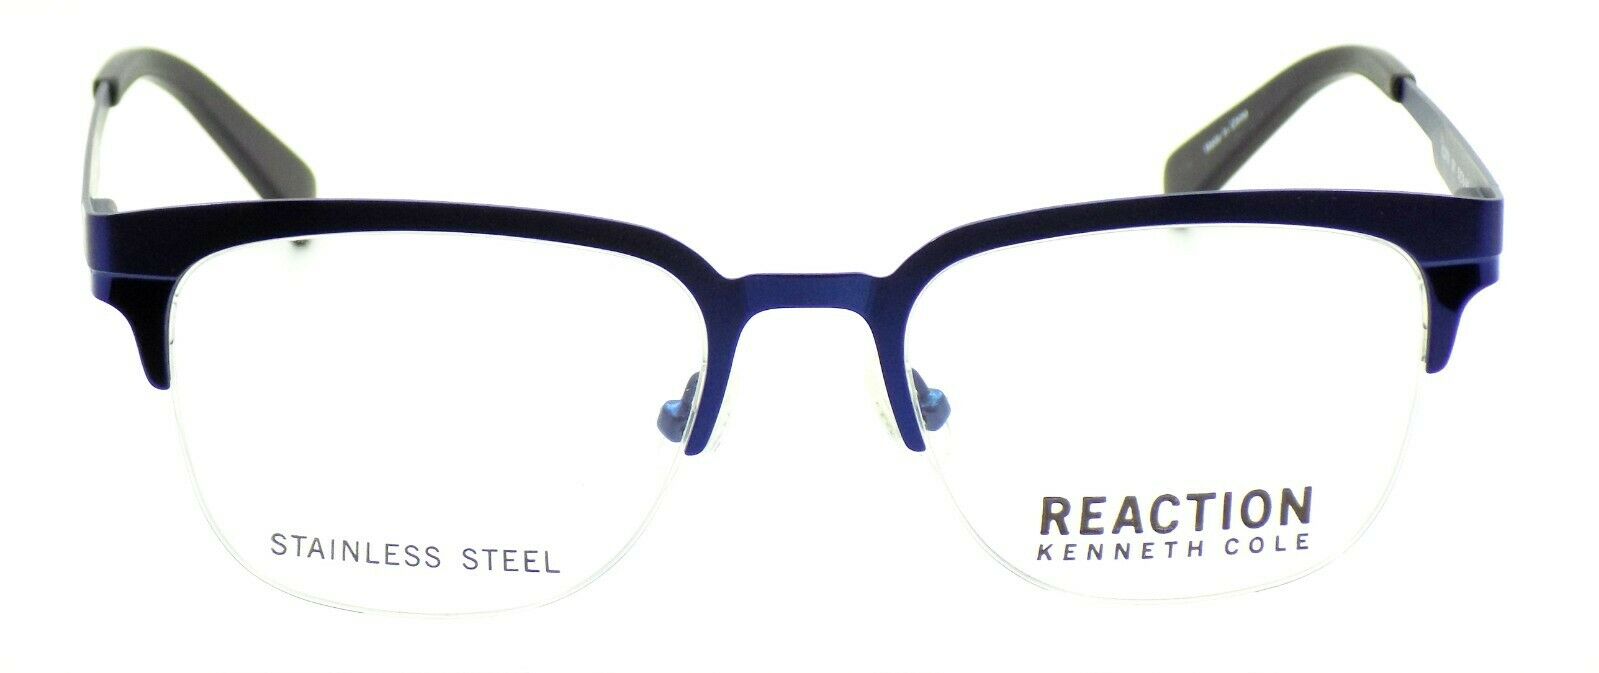 2-Kenneth Cole REACTION KC0791 091 Men's Eyeglasses Frames 50-18-140 Matte Blue-664689888832-IKSpecs